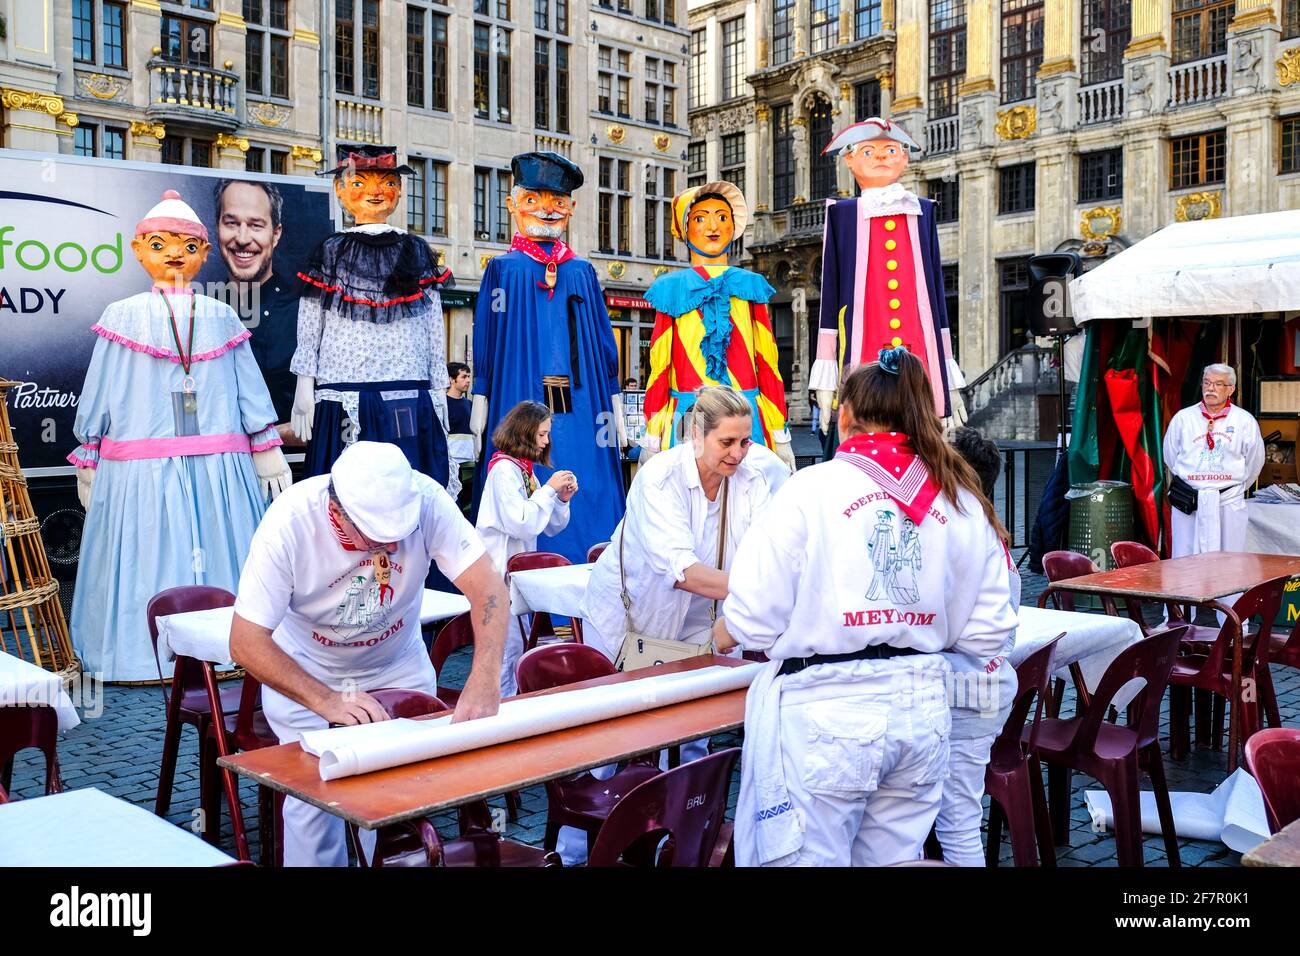 21.09.2019, Bruessel, Belgien - Vorbereitungen fuer eine Folkloreveranstaltung auf dem Grand-Place in Bruessel, bei der auch traditionelle Grosspuppen Stock Photo